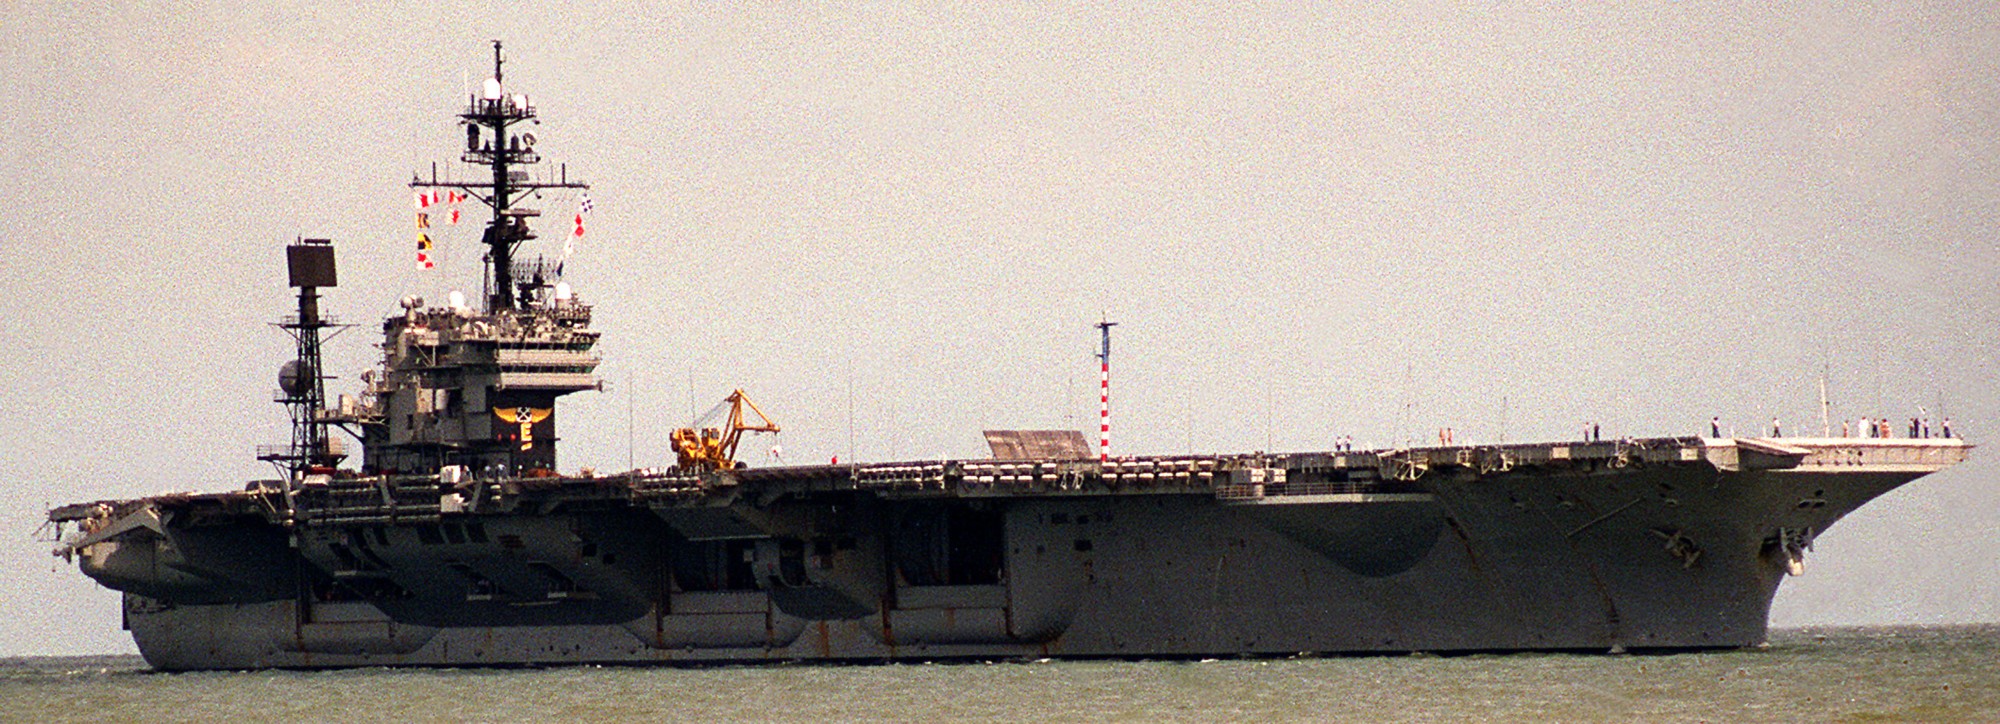 cv-66 uss america kitty hawk class aircraft carrier 107